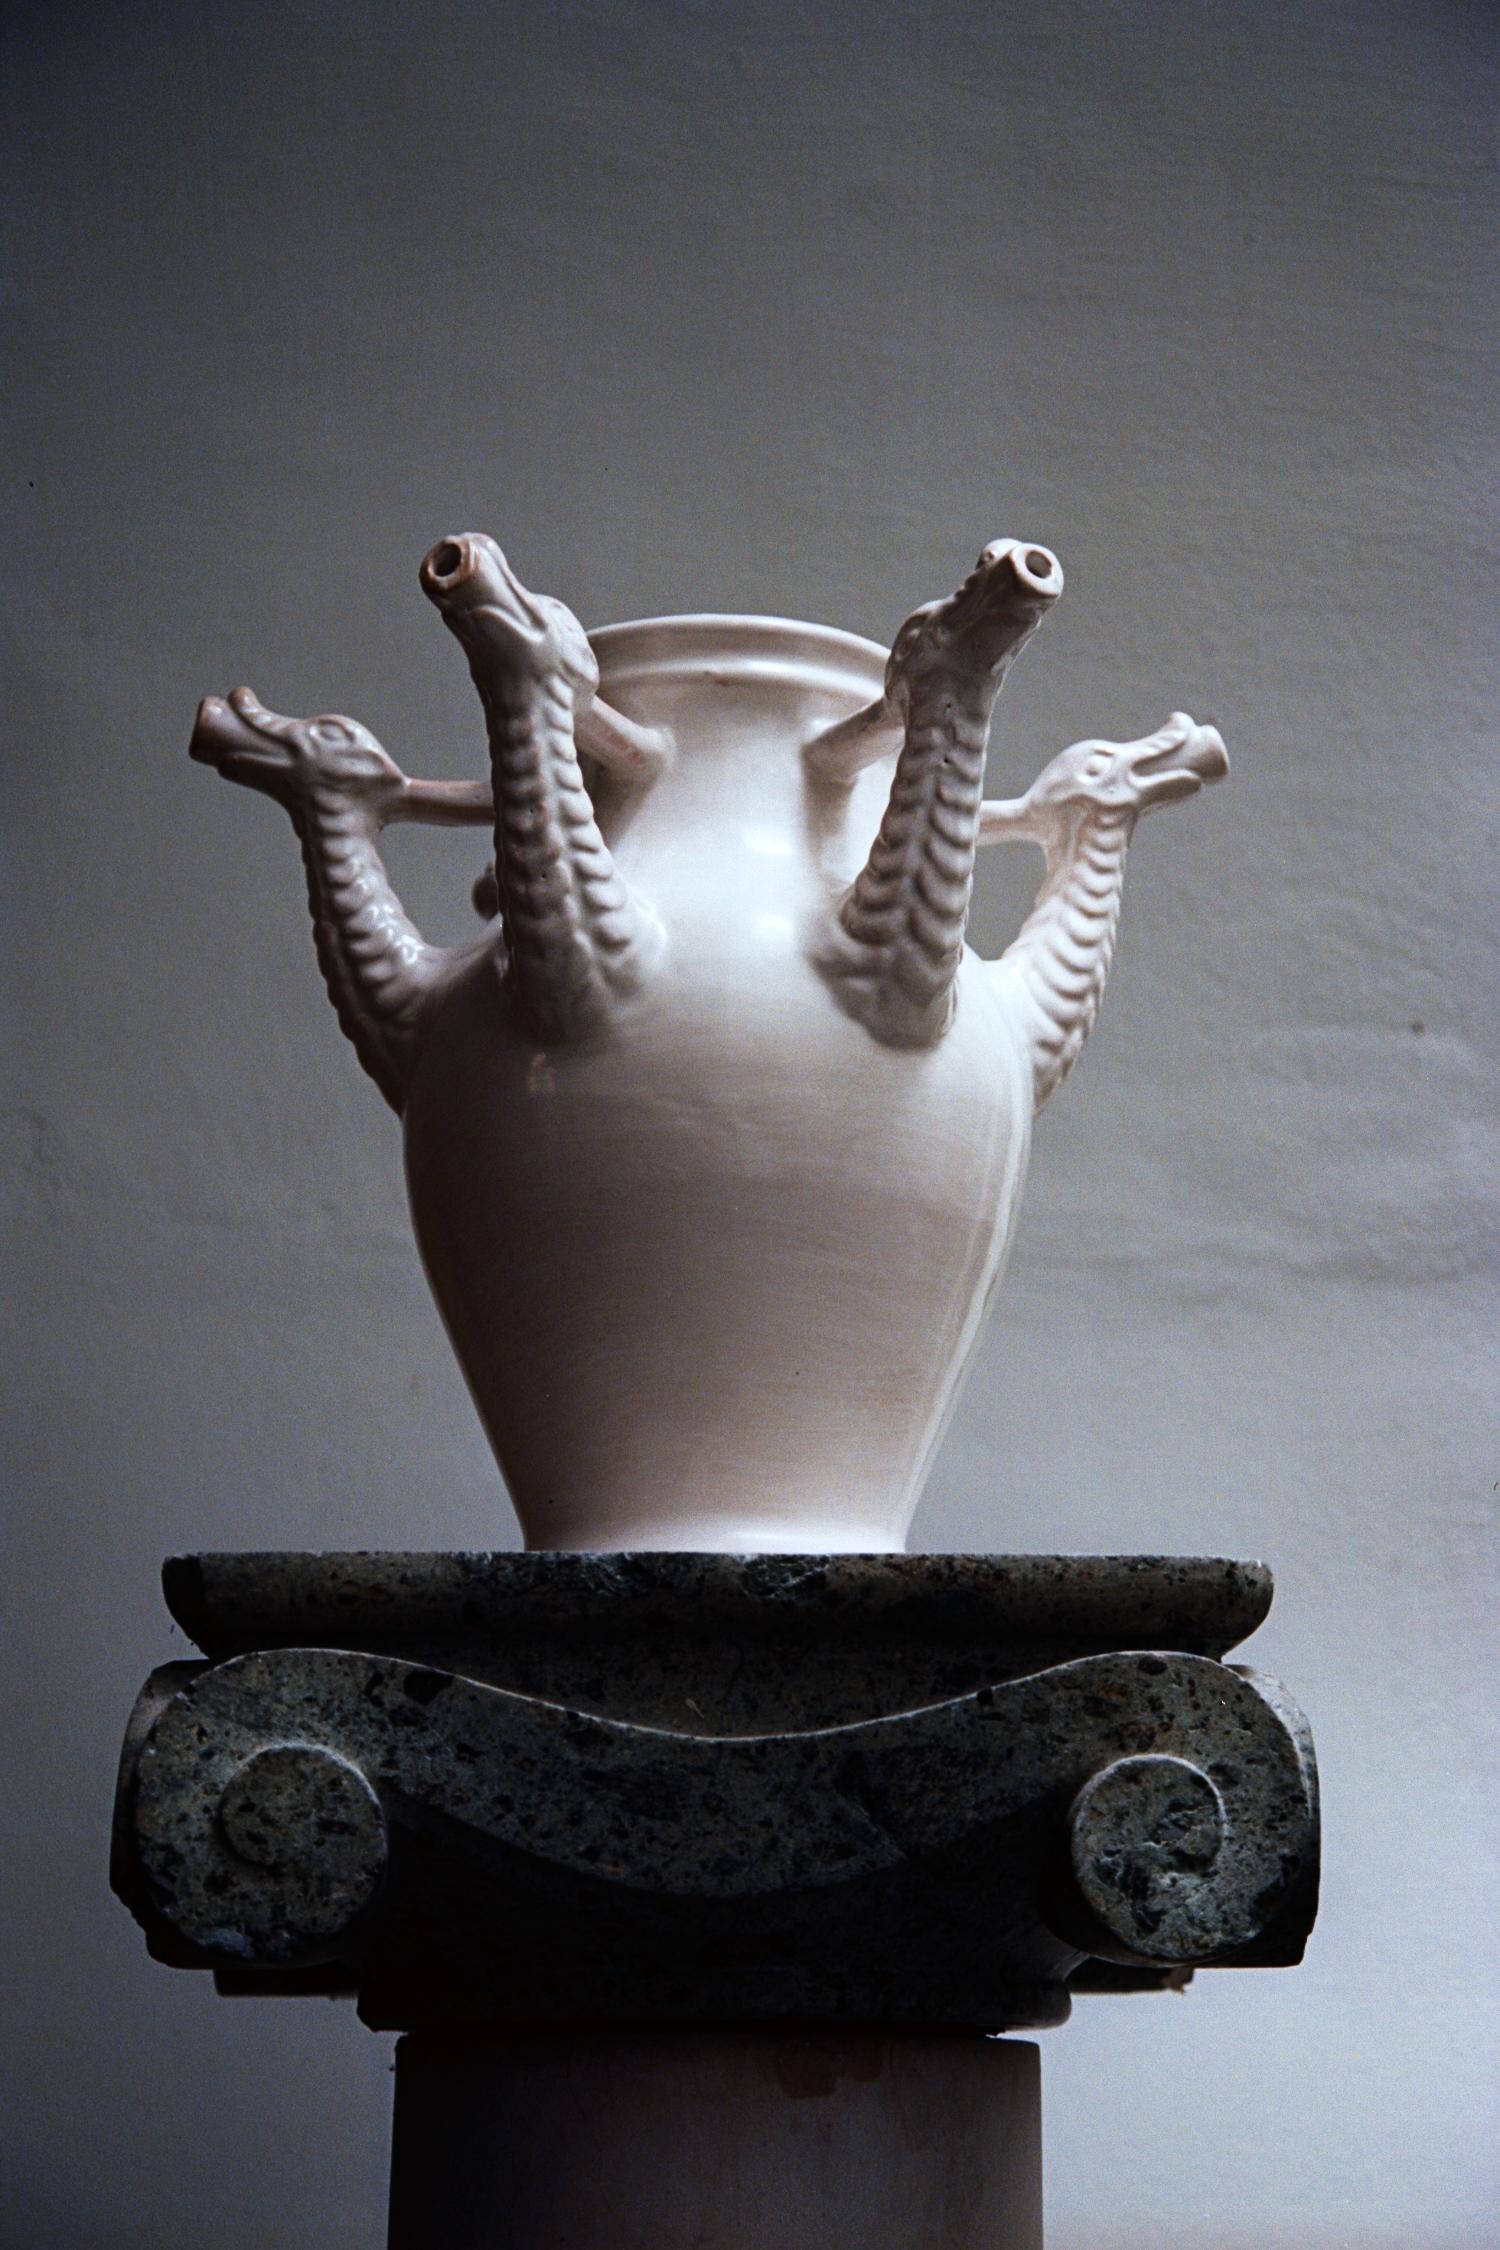 Das Drago Bianco-Gefäß von Coseincorso
Abmessungen: Ø 40 x H 35 cm.
MATERIALIEN: Keramik mit bleifreier Glasur.
 
Der Drago Bianco ist inspiriert von den in Castelli hergestellten Drogentöpfen der Orsini-Colonna Collection. Diese Gefäße wurden von